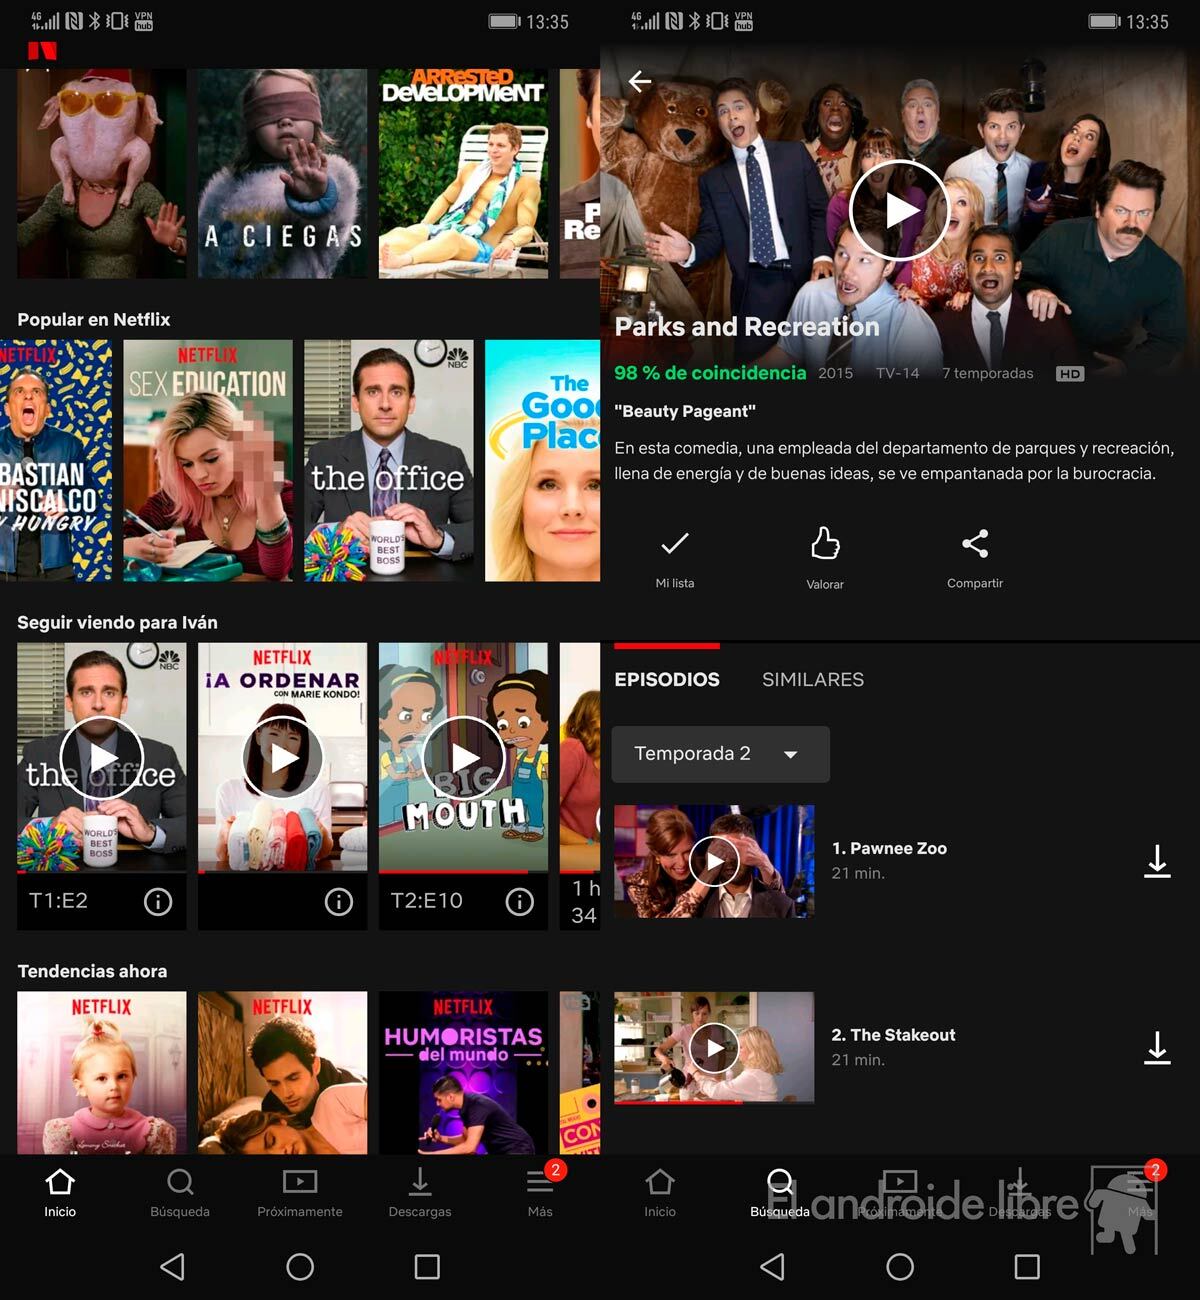 ¿Cómo puedo ver películas que no están en Netflix